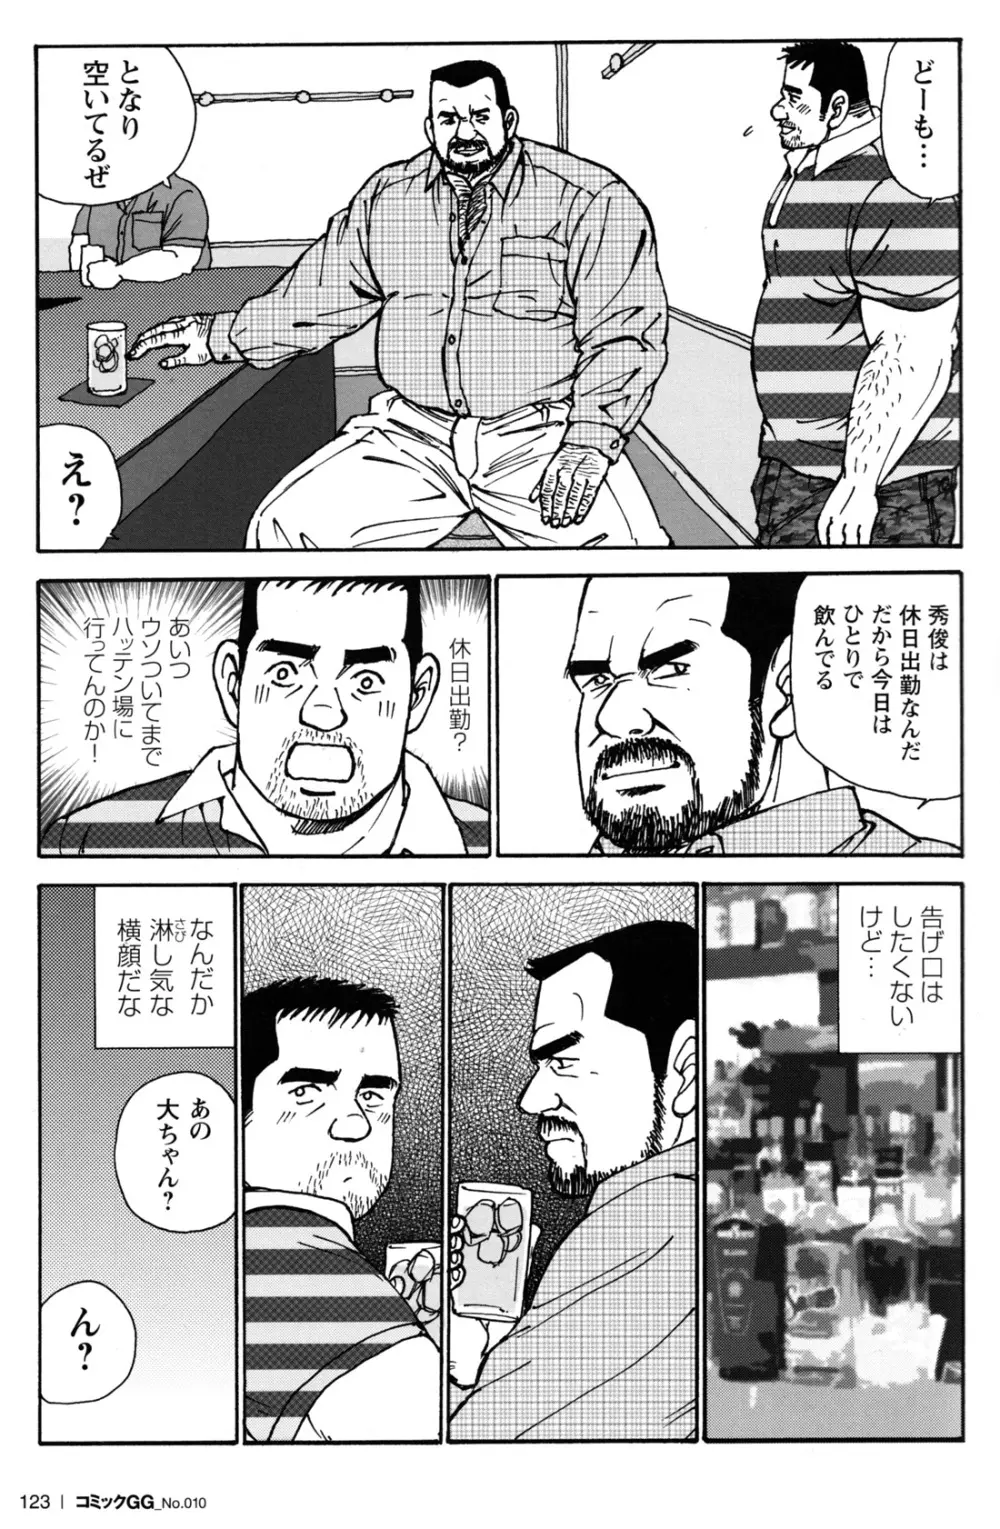 コミックG.G. No.10 のぞき・レイプ・痴漢 117ページ